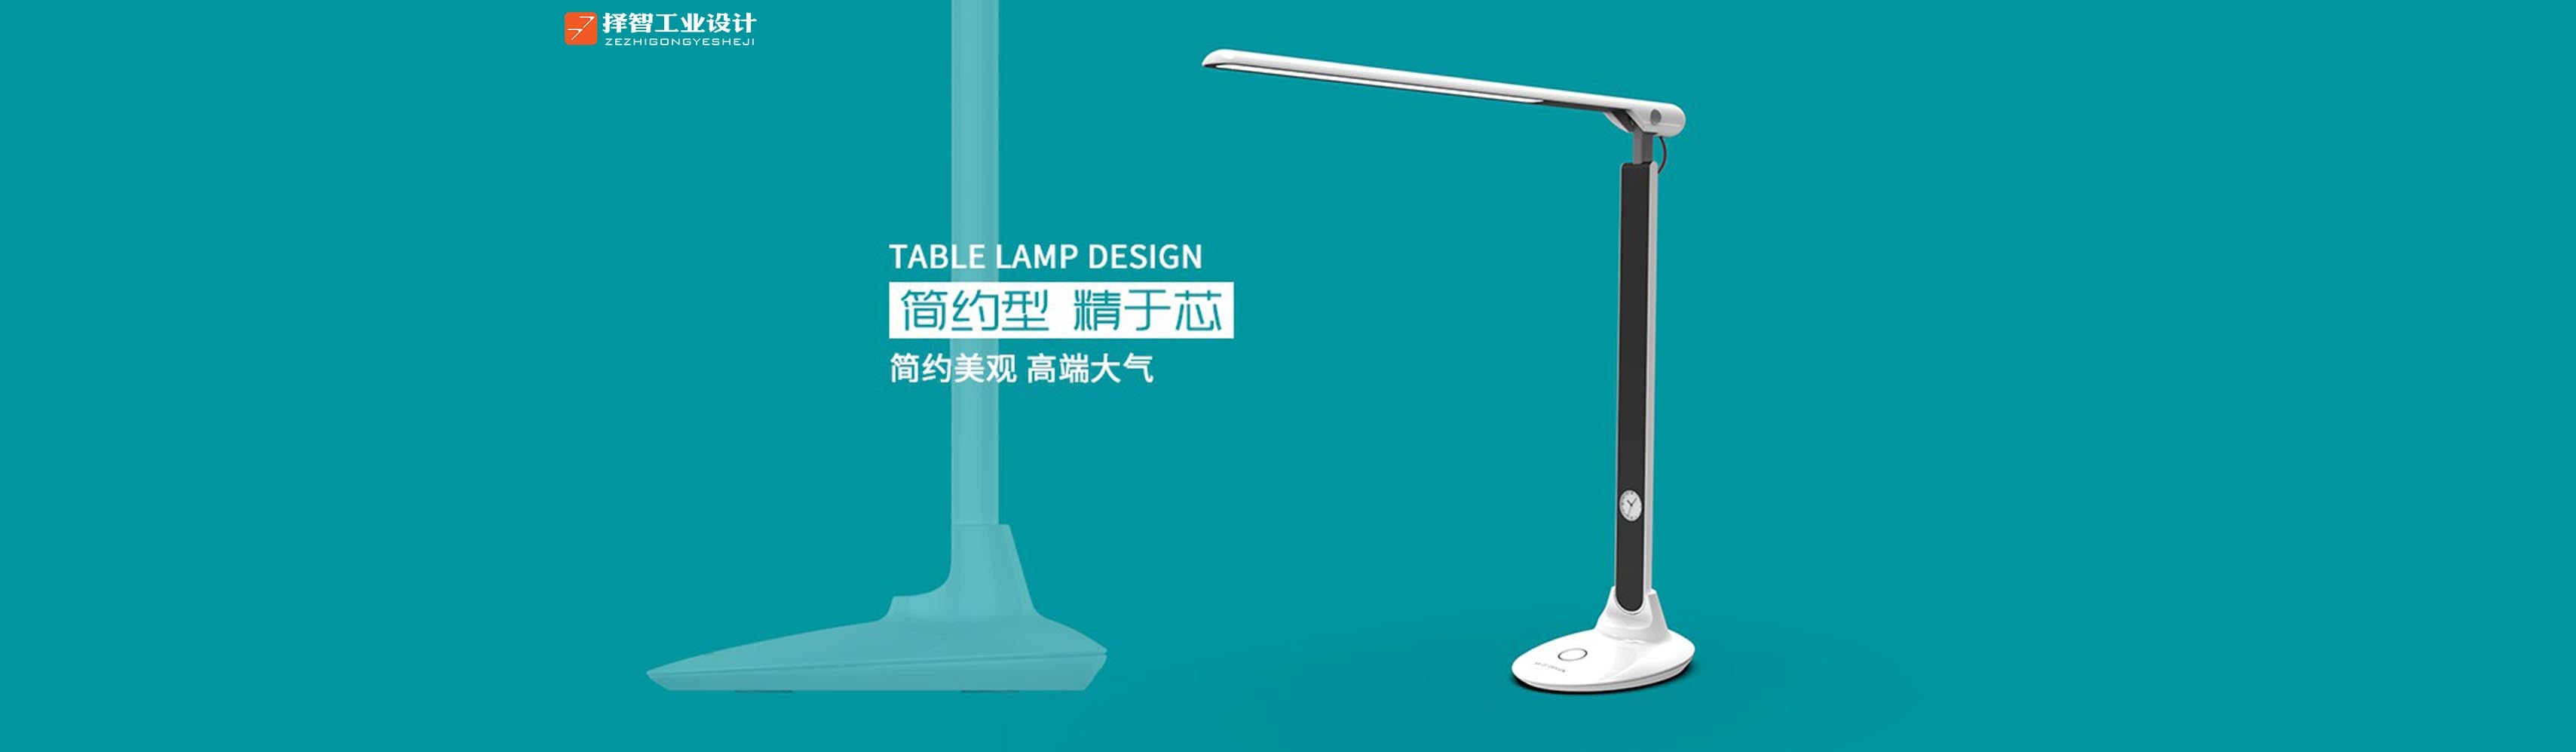 上海苏州产品设计 工业产品外观设计 结构设计 台灯结构方案设计